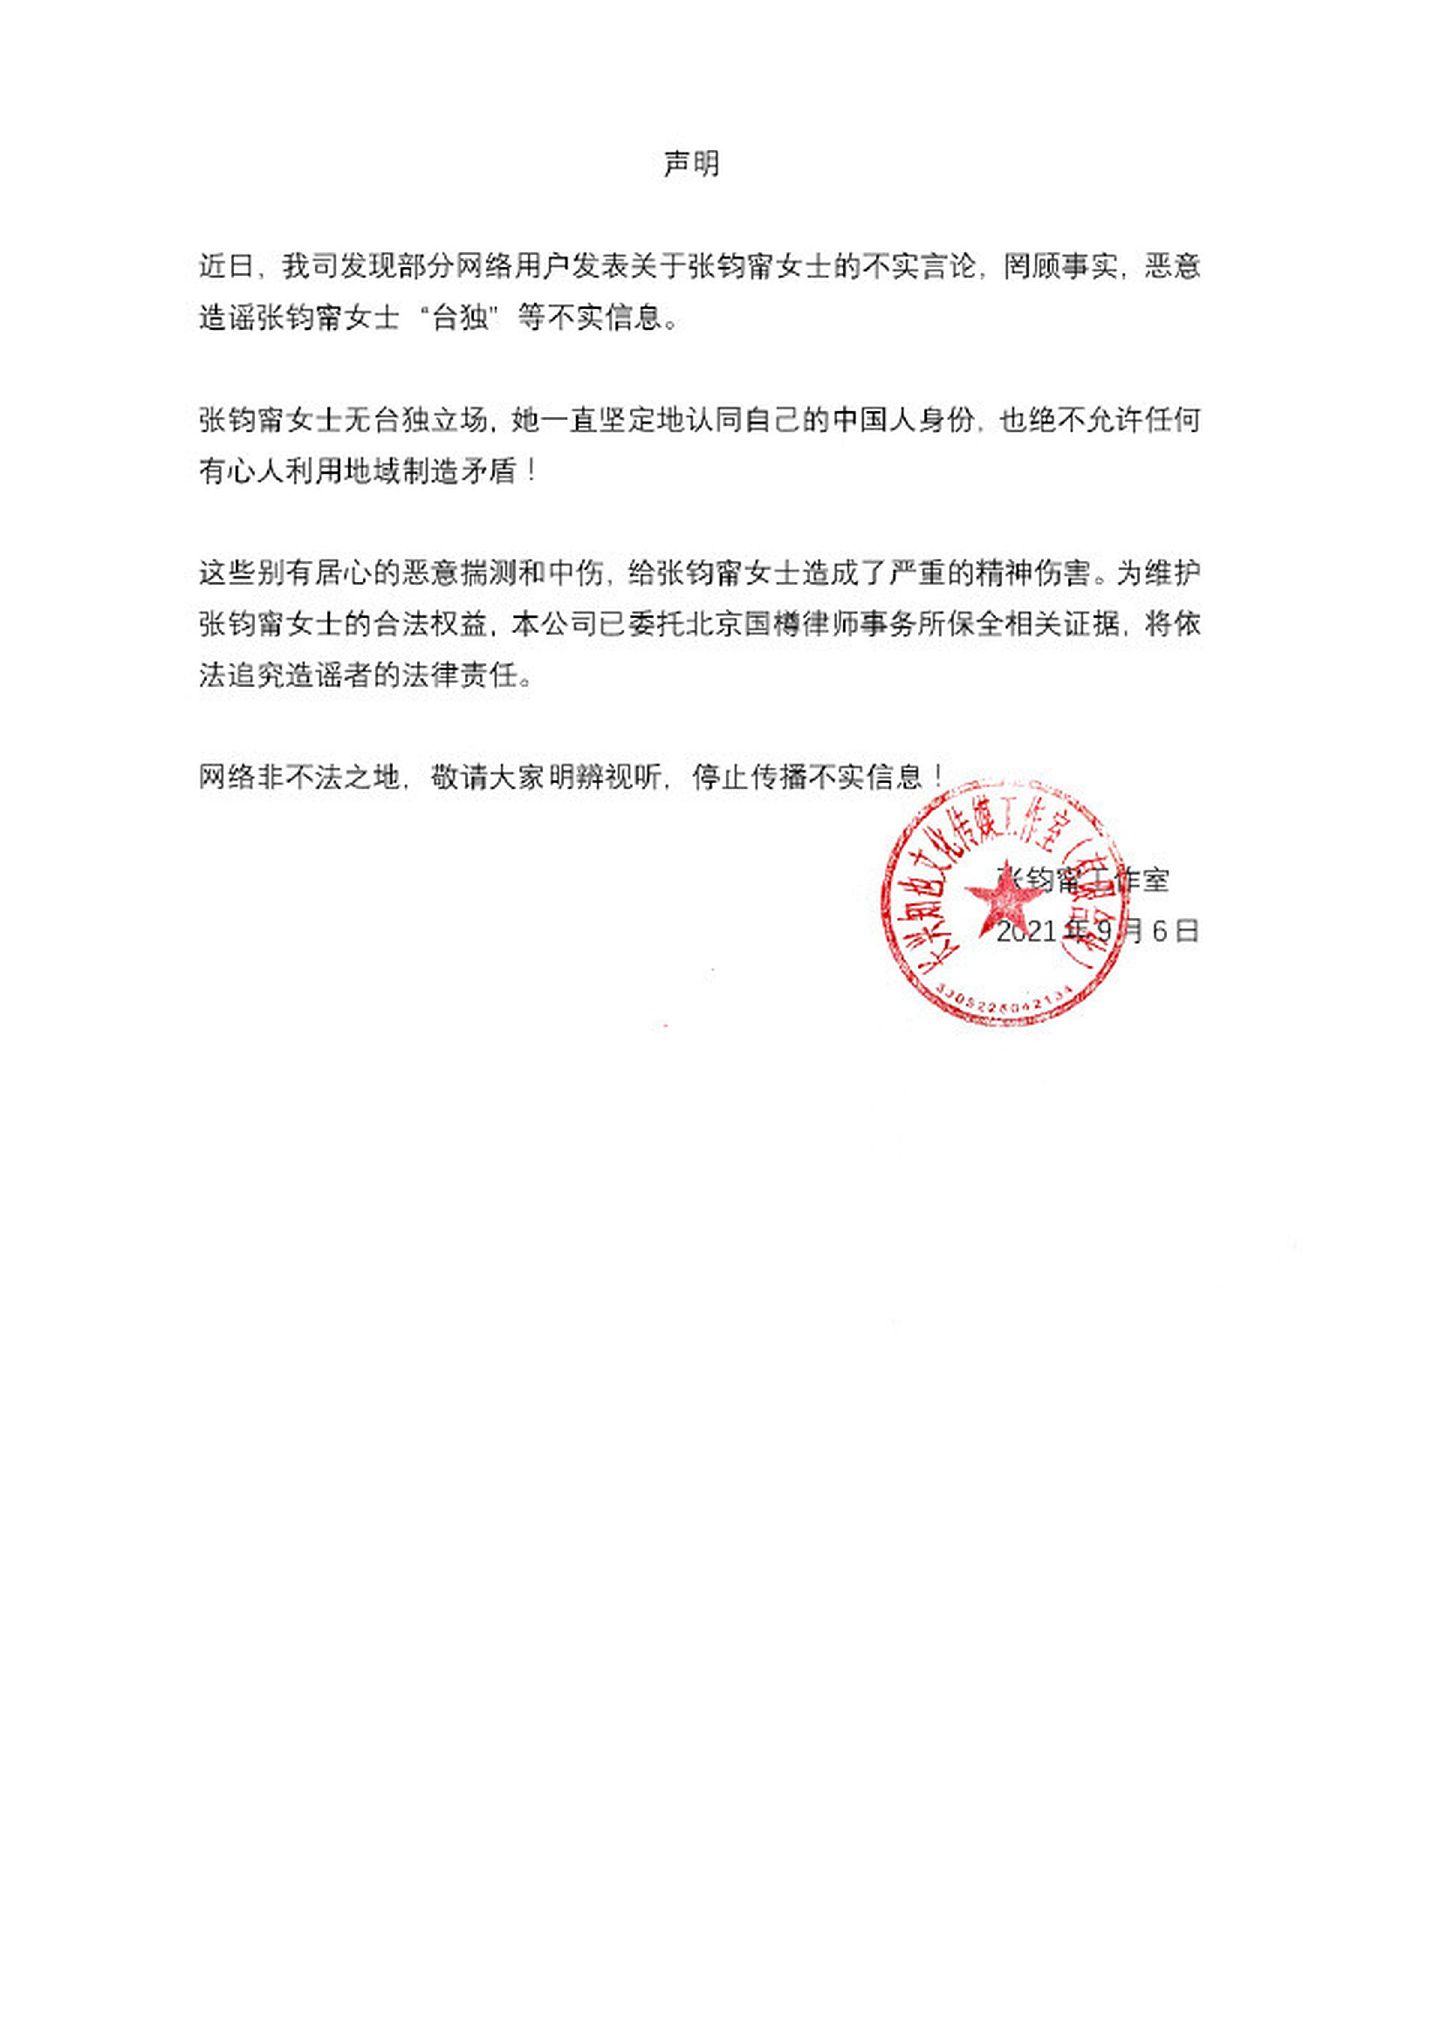 张钧宁工作室于9月6日发布声明指出，近期互联网上指控张钧宁的台独言论是不实资讯，并表明自一直坚定认同自己的中国人身分。（微博@张钧宁工作室）